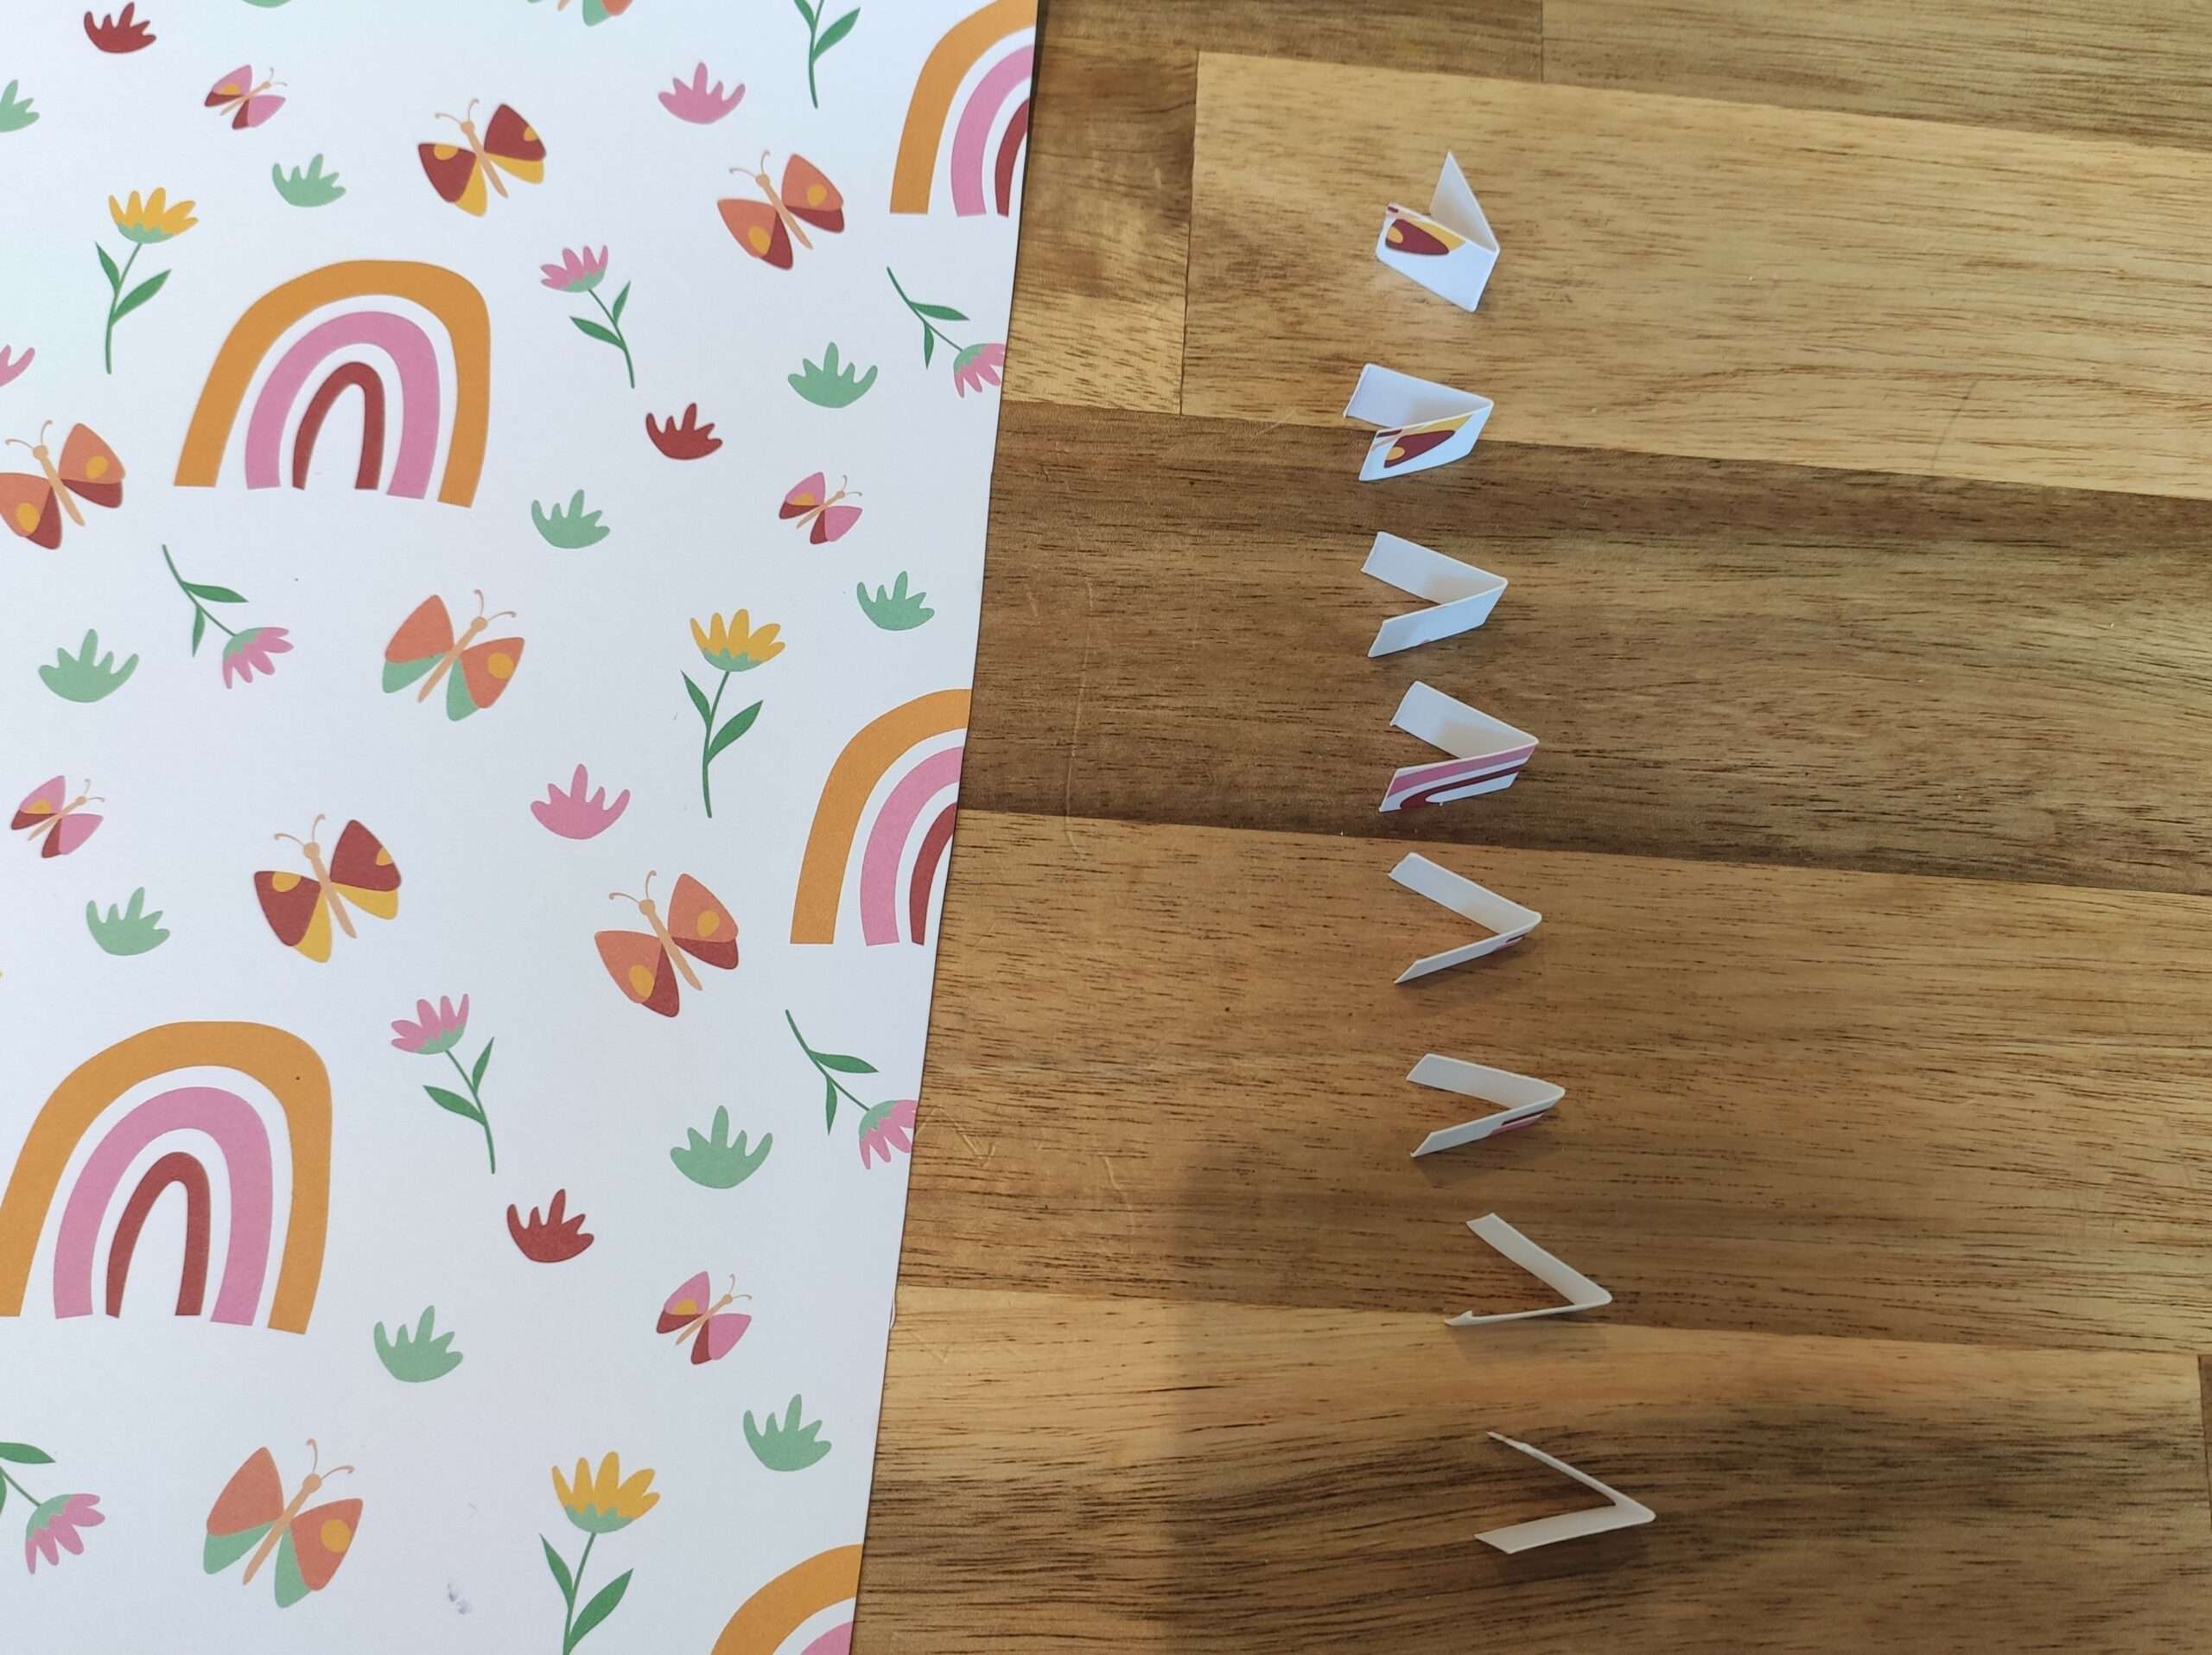 Bild zum Schritt 10 für das Bastel- und DIY-Abenteuer für Kinder: 'Nun faltet ihr jedes Papierstück einmal in der Mitte zusammen....'